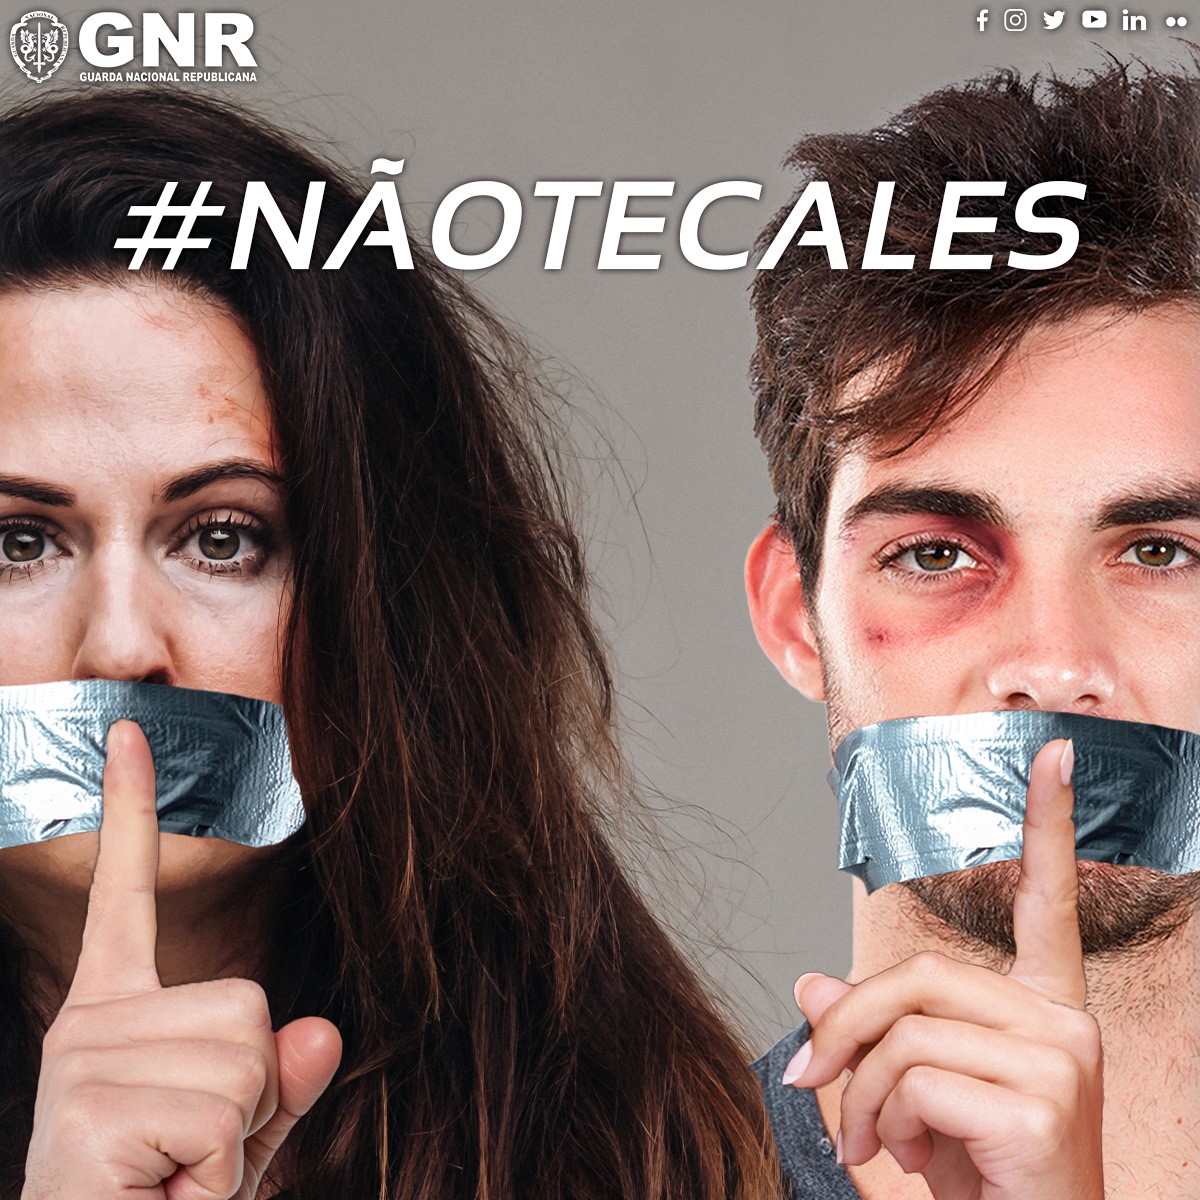 #NãoTeCales - Não à violência no namoro